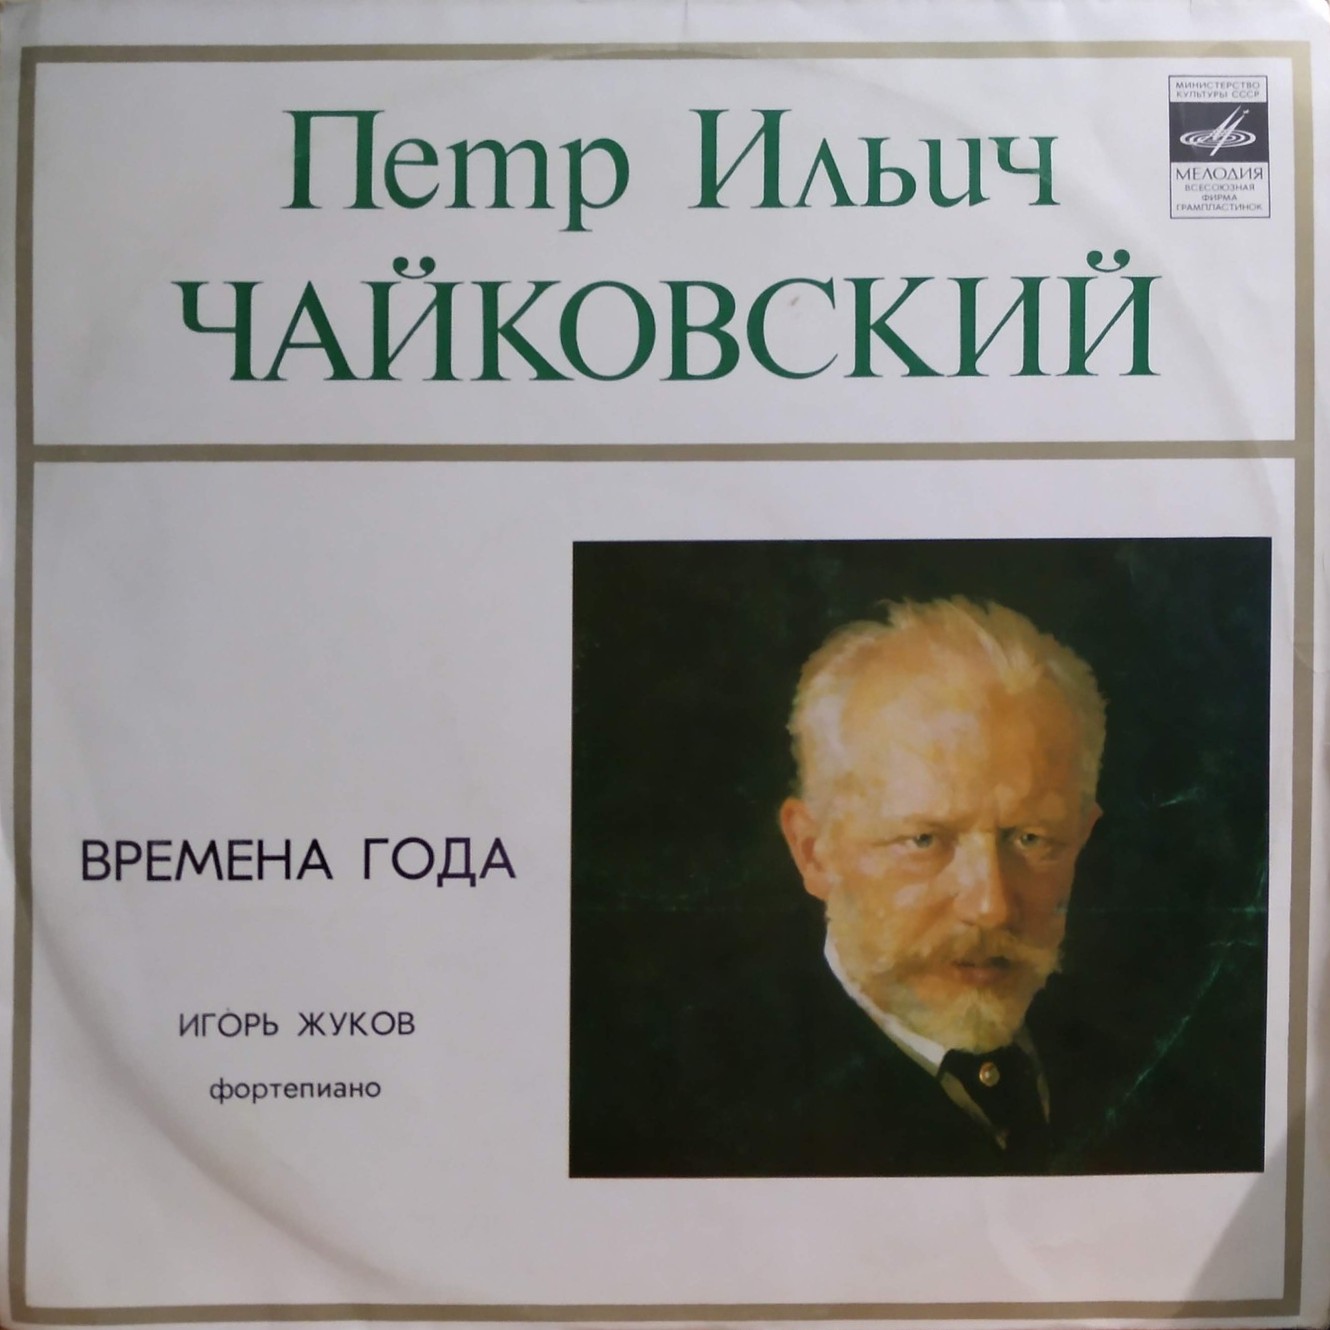 П. Чайковский: Времена года (Игорь Жуков, ф-но)